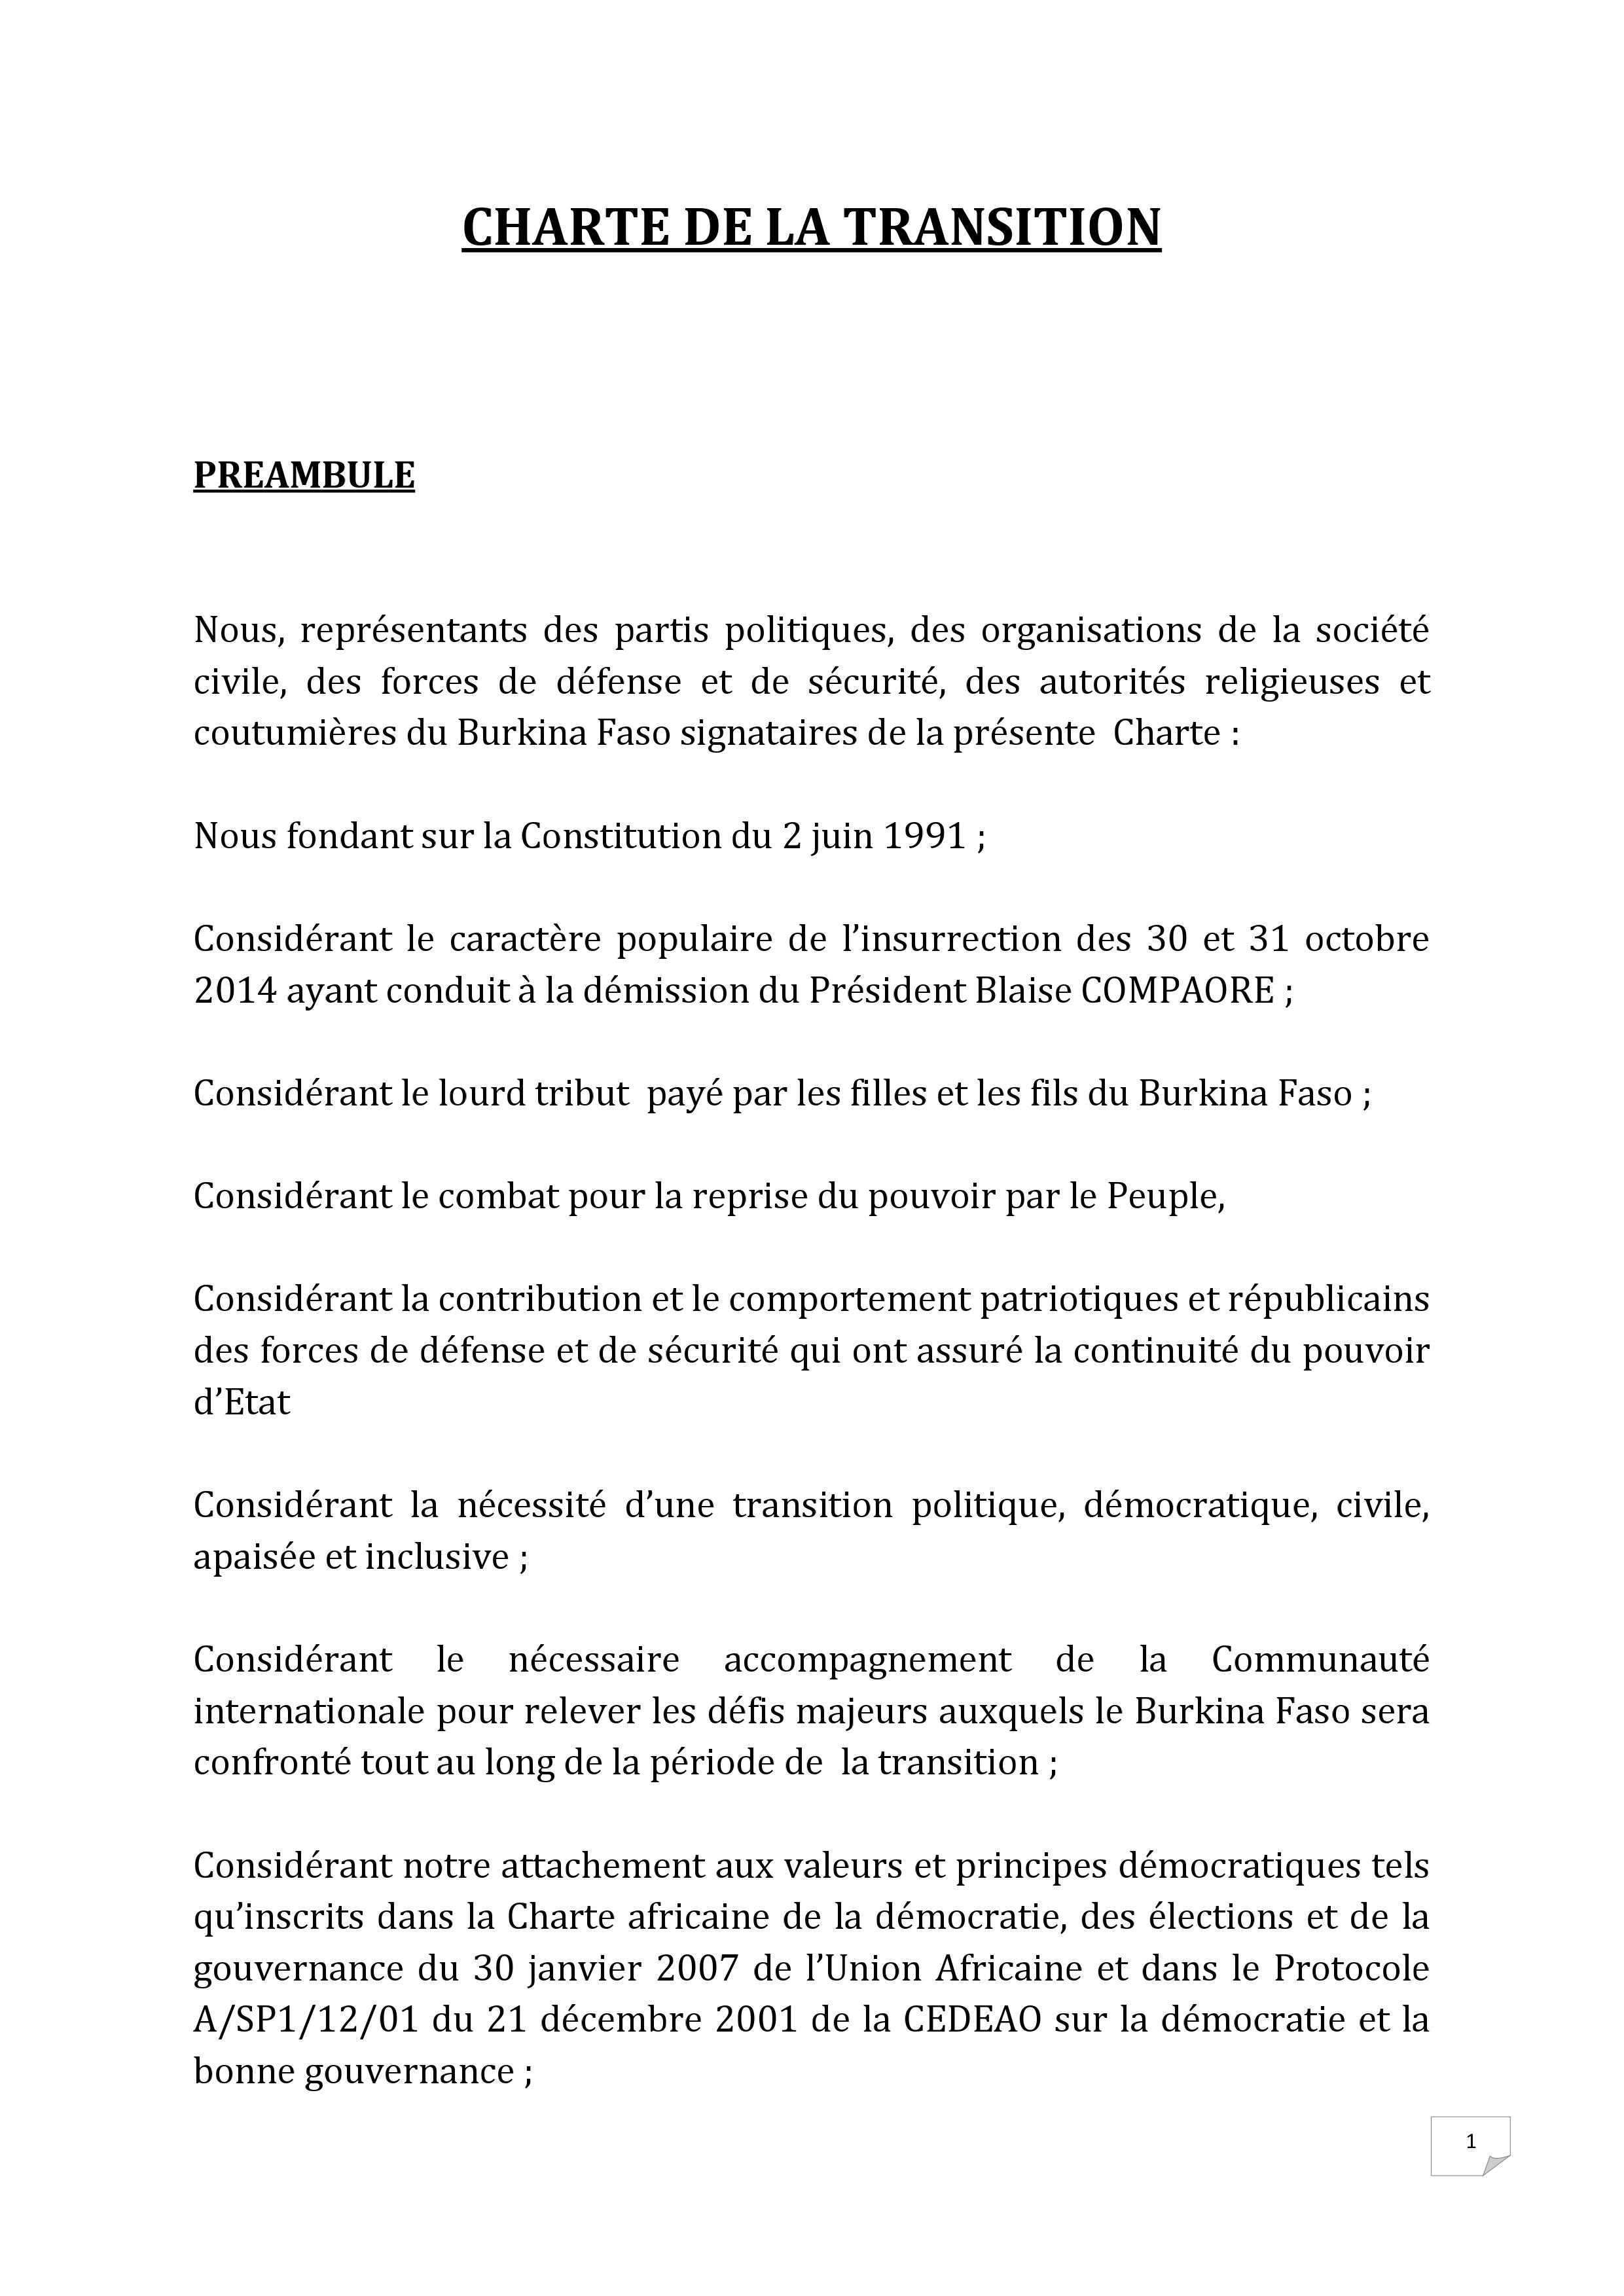 Interim Constitution - Burkina Faso (2014-present)